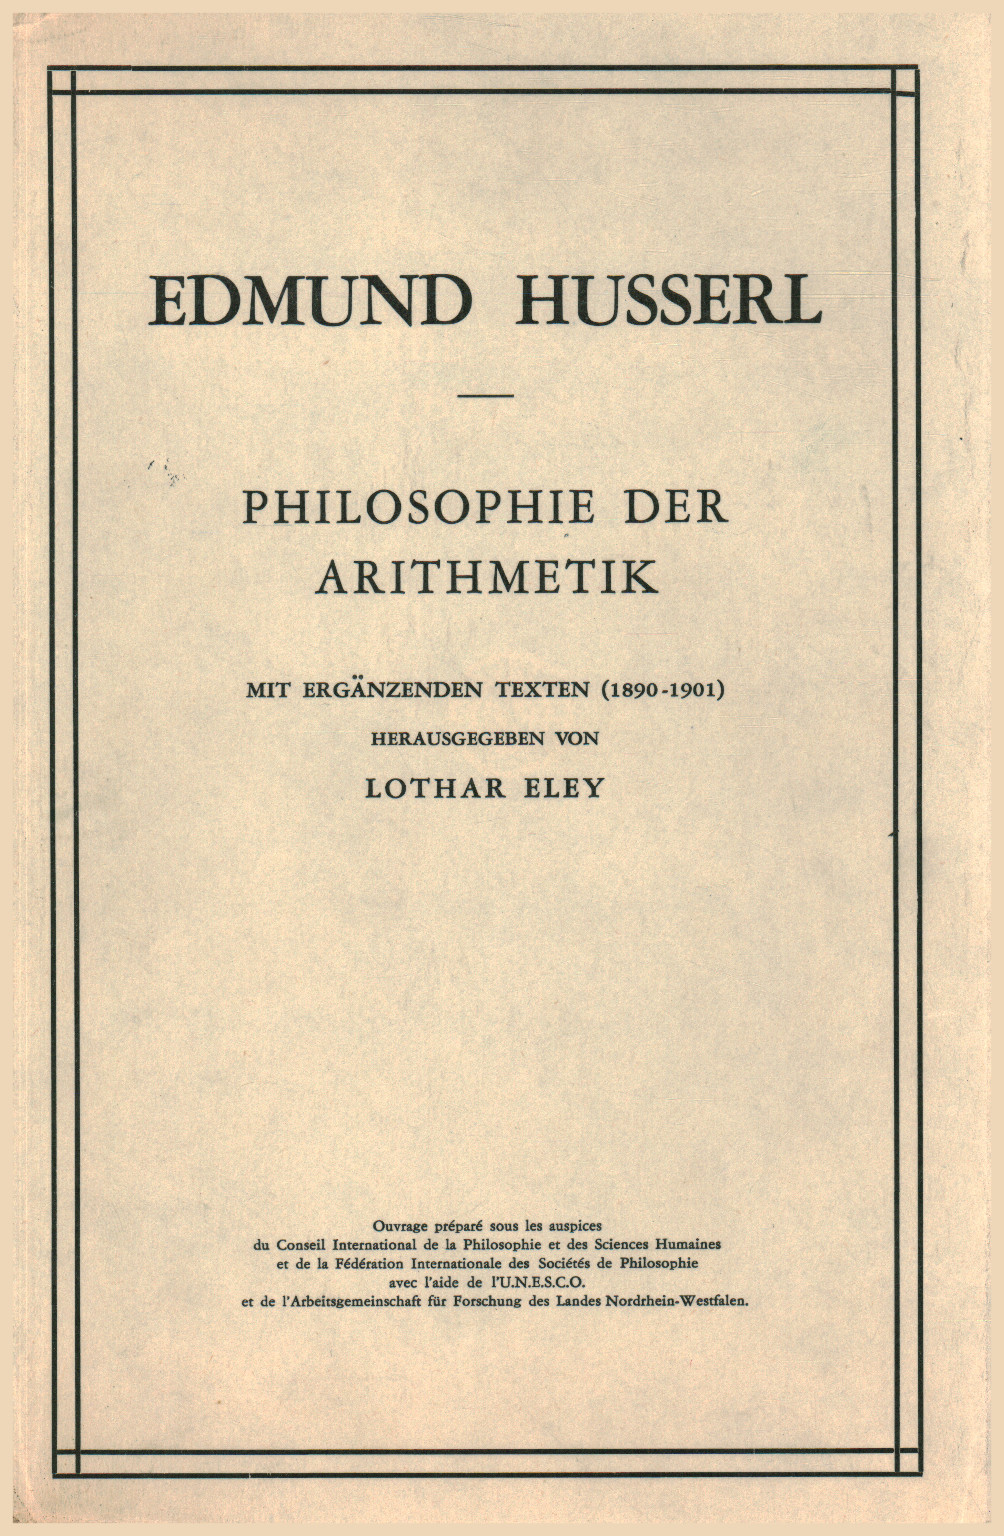 Philosophie der arithmetik, s.una.